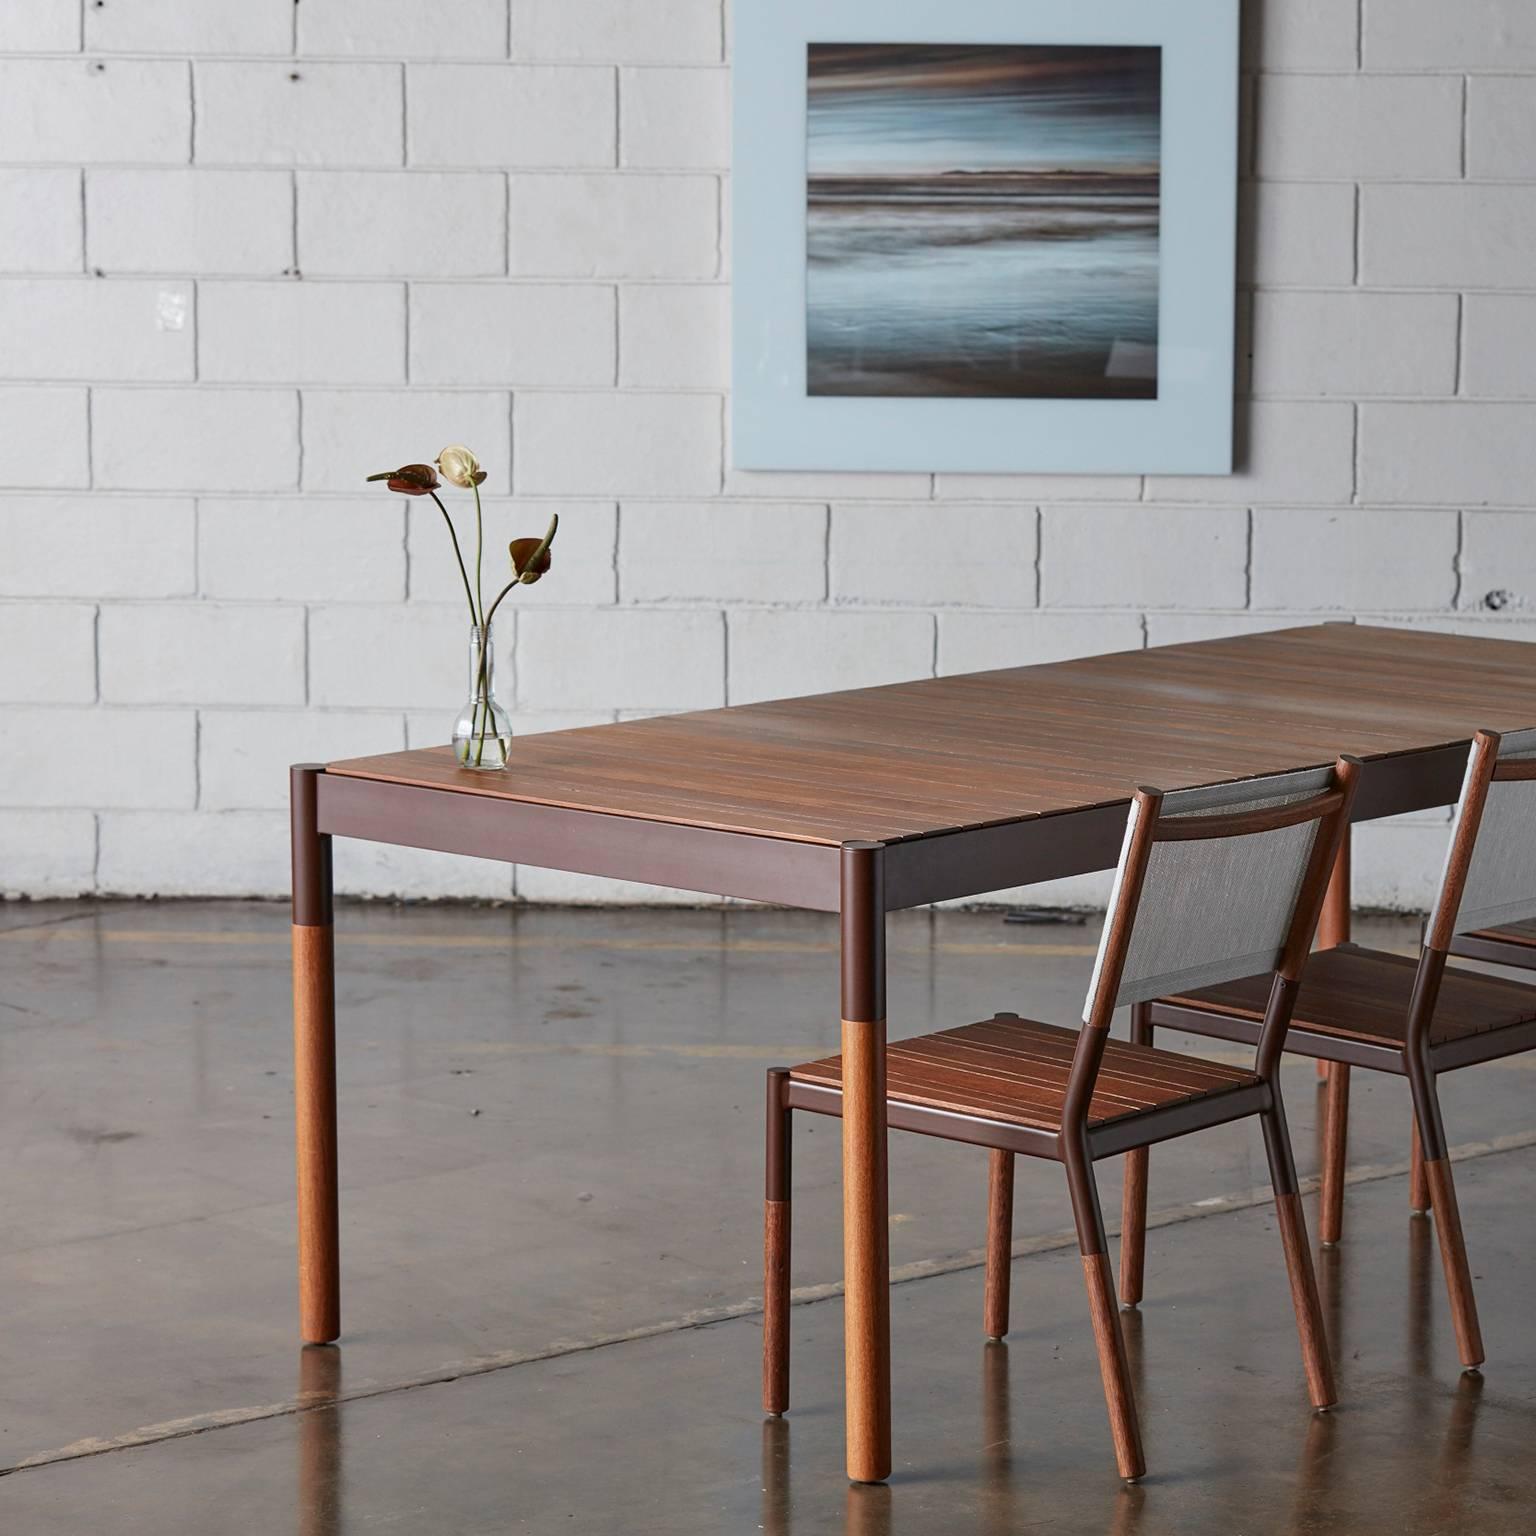 Dieser Esstisch für den Außenbereich ist aus Hartholz und Metall in einem minimalistischen Design gefertigt. Es ist ein Tisch, der eine dünne Massivholzplatte mit einem robusten Korpus kombiniert, der das sanfte und weiche Aussehen der Platte mit